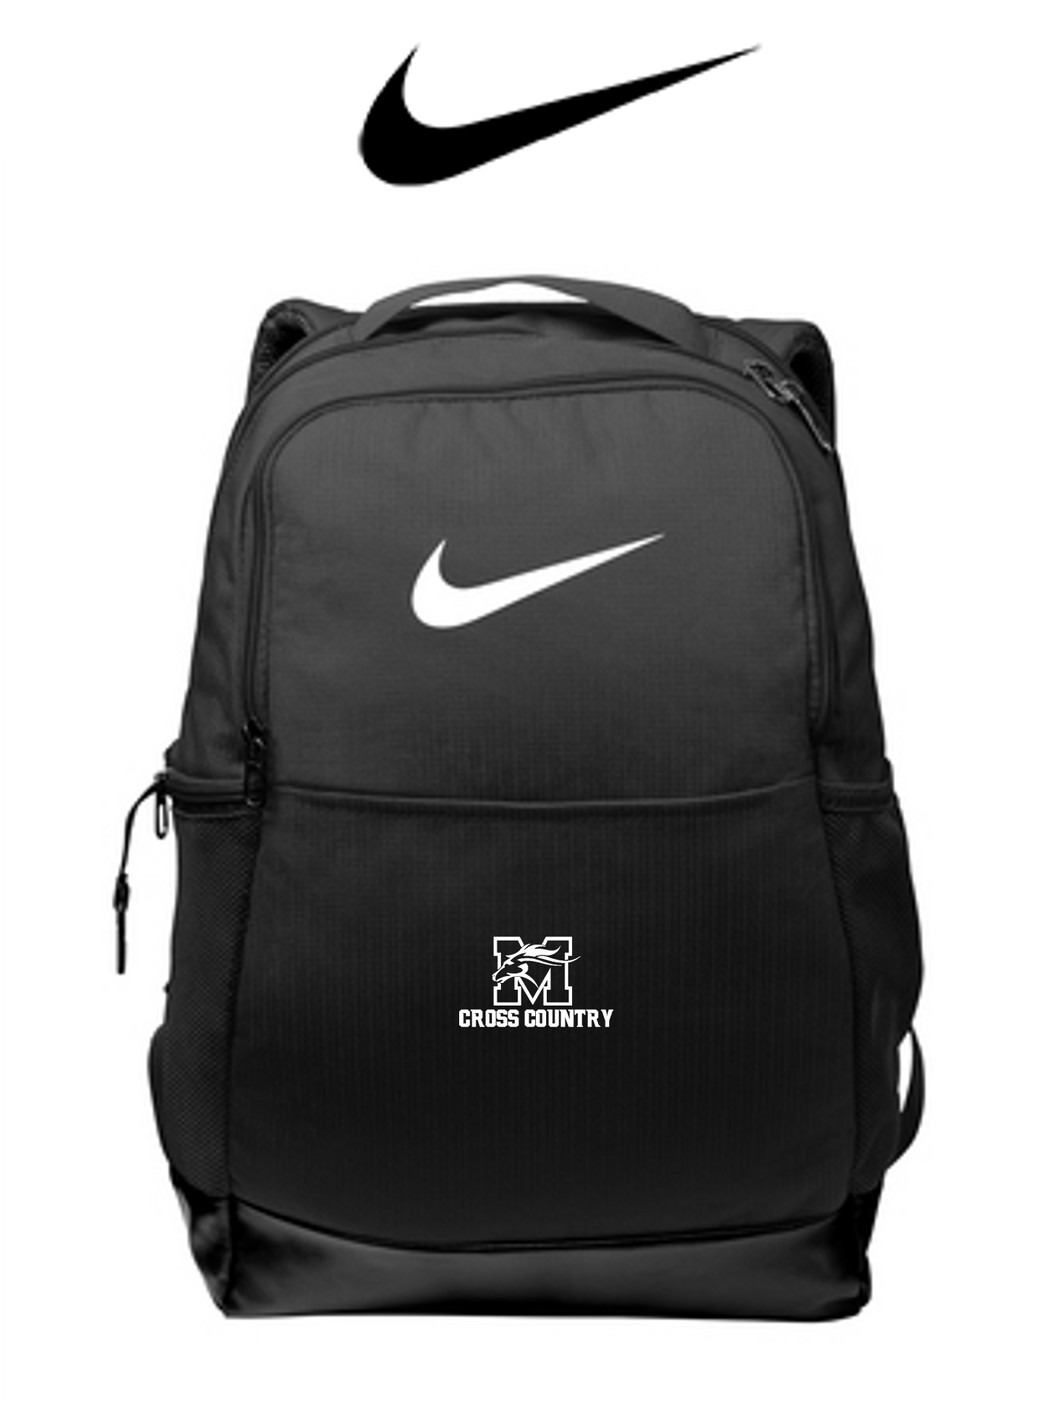 *Nike Brasilia Medium Backpack - Mainland XC